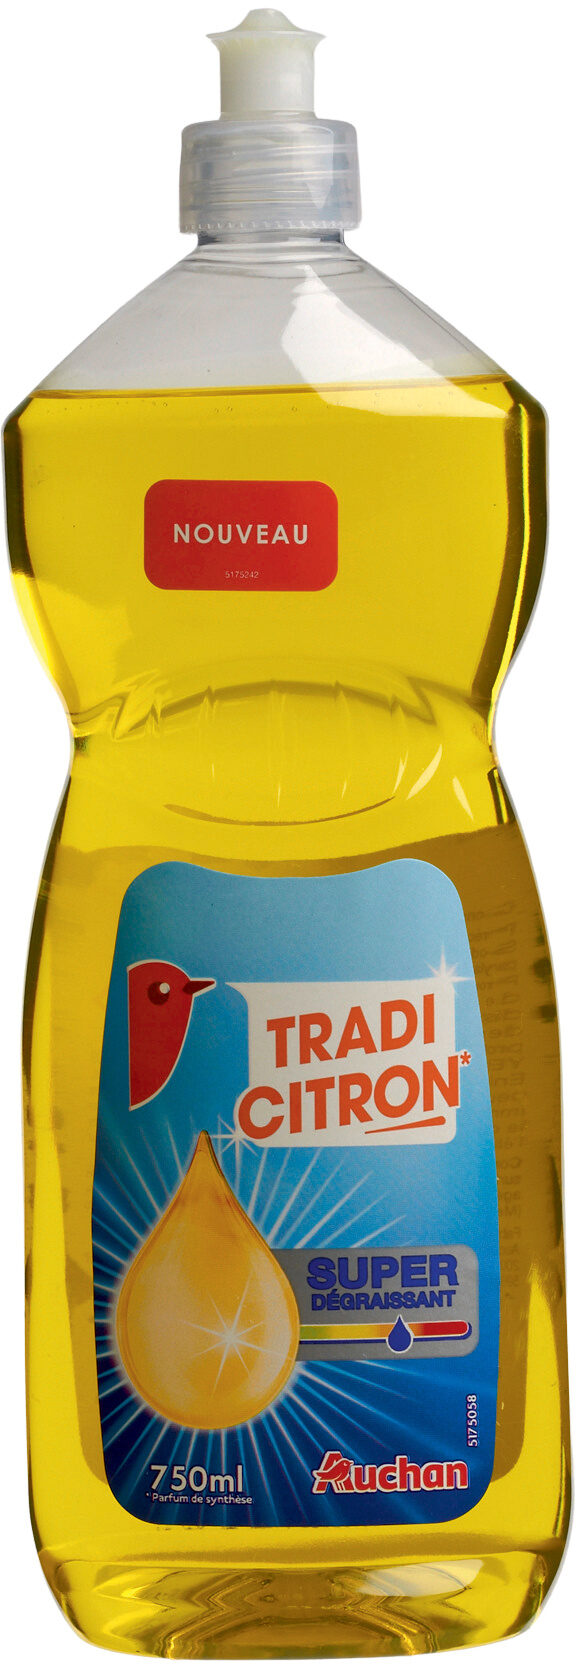 Auchan liquide vaisselle classique citron 750 ml - Produit - fr